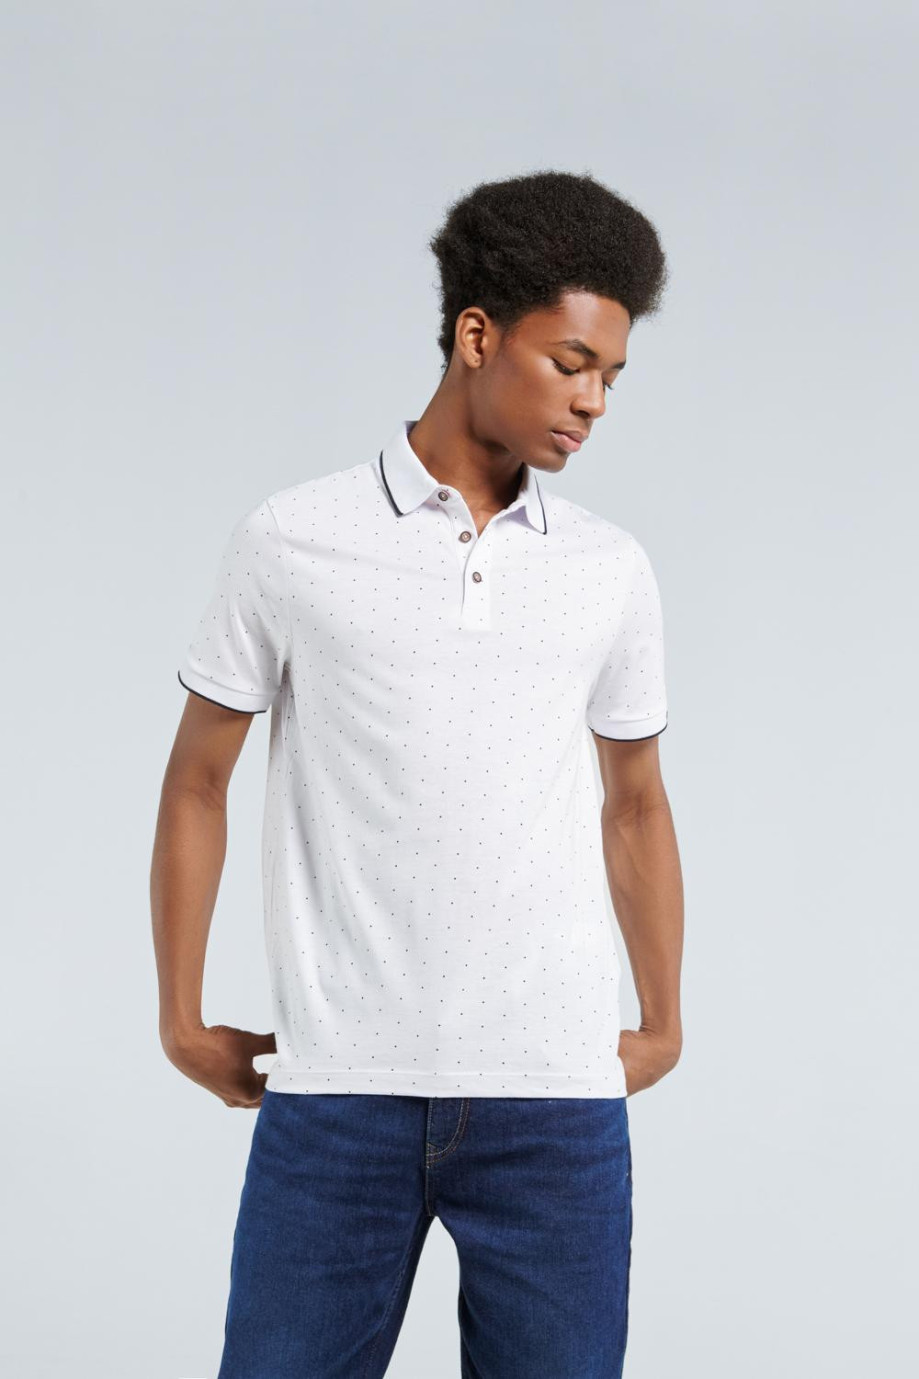 Camiseta blanca tipo polo con puntos negros estampados y manga corta